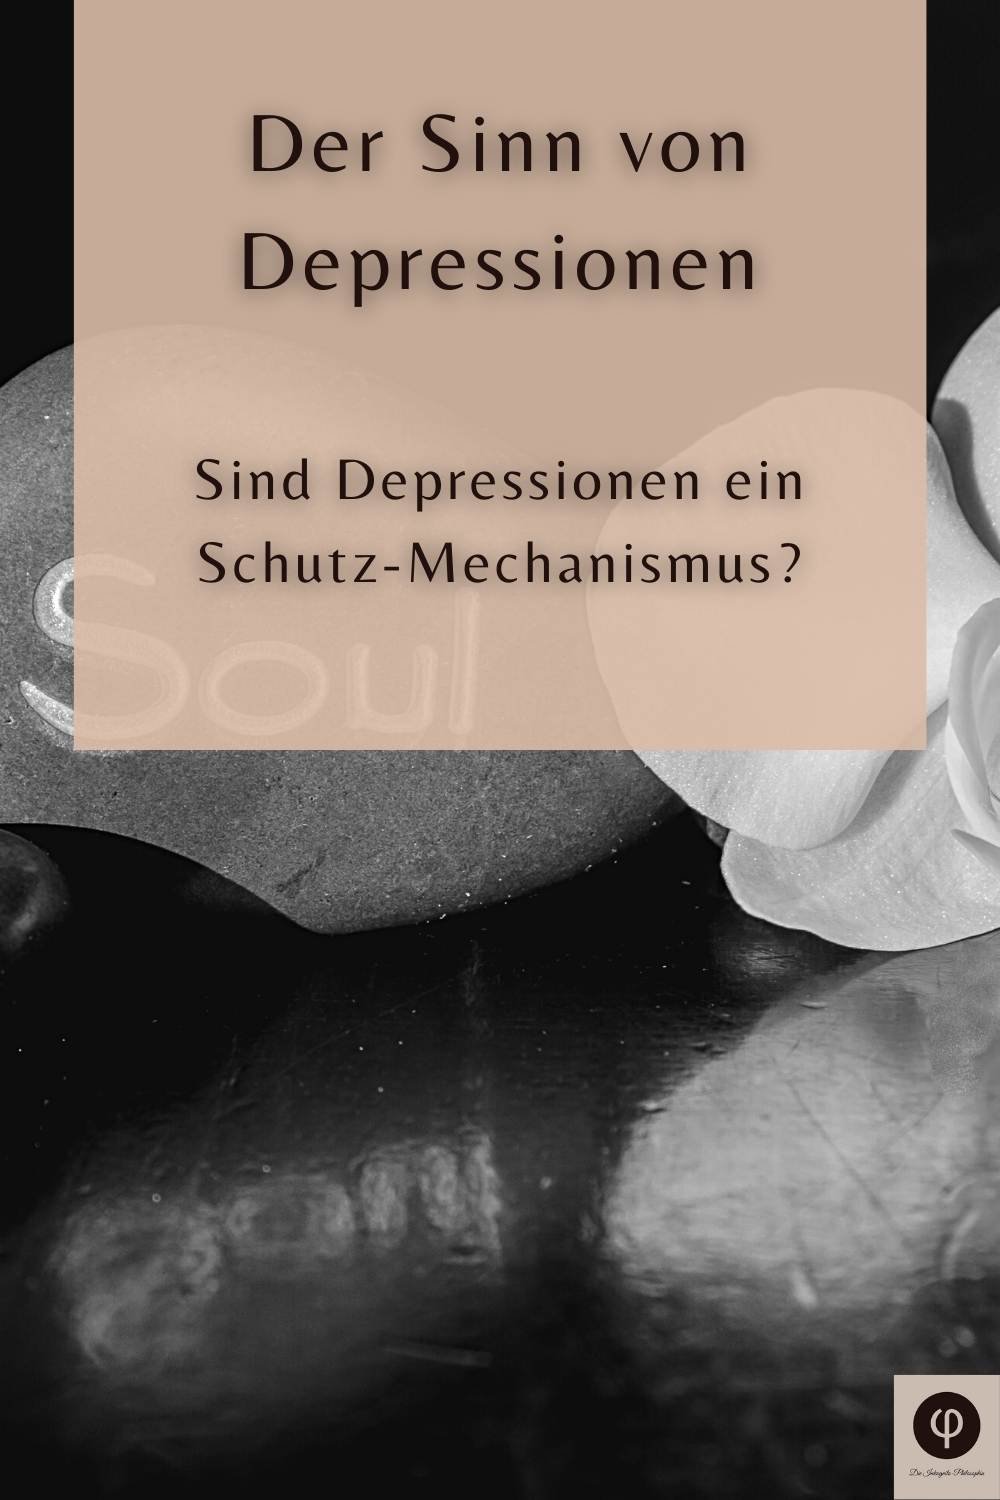 Depression als Schutz – Welchen Sinn haben Depressionen?